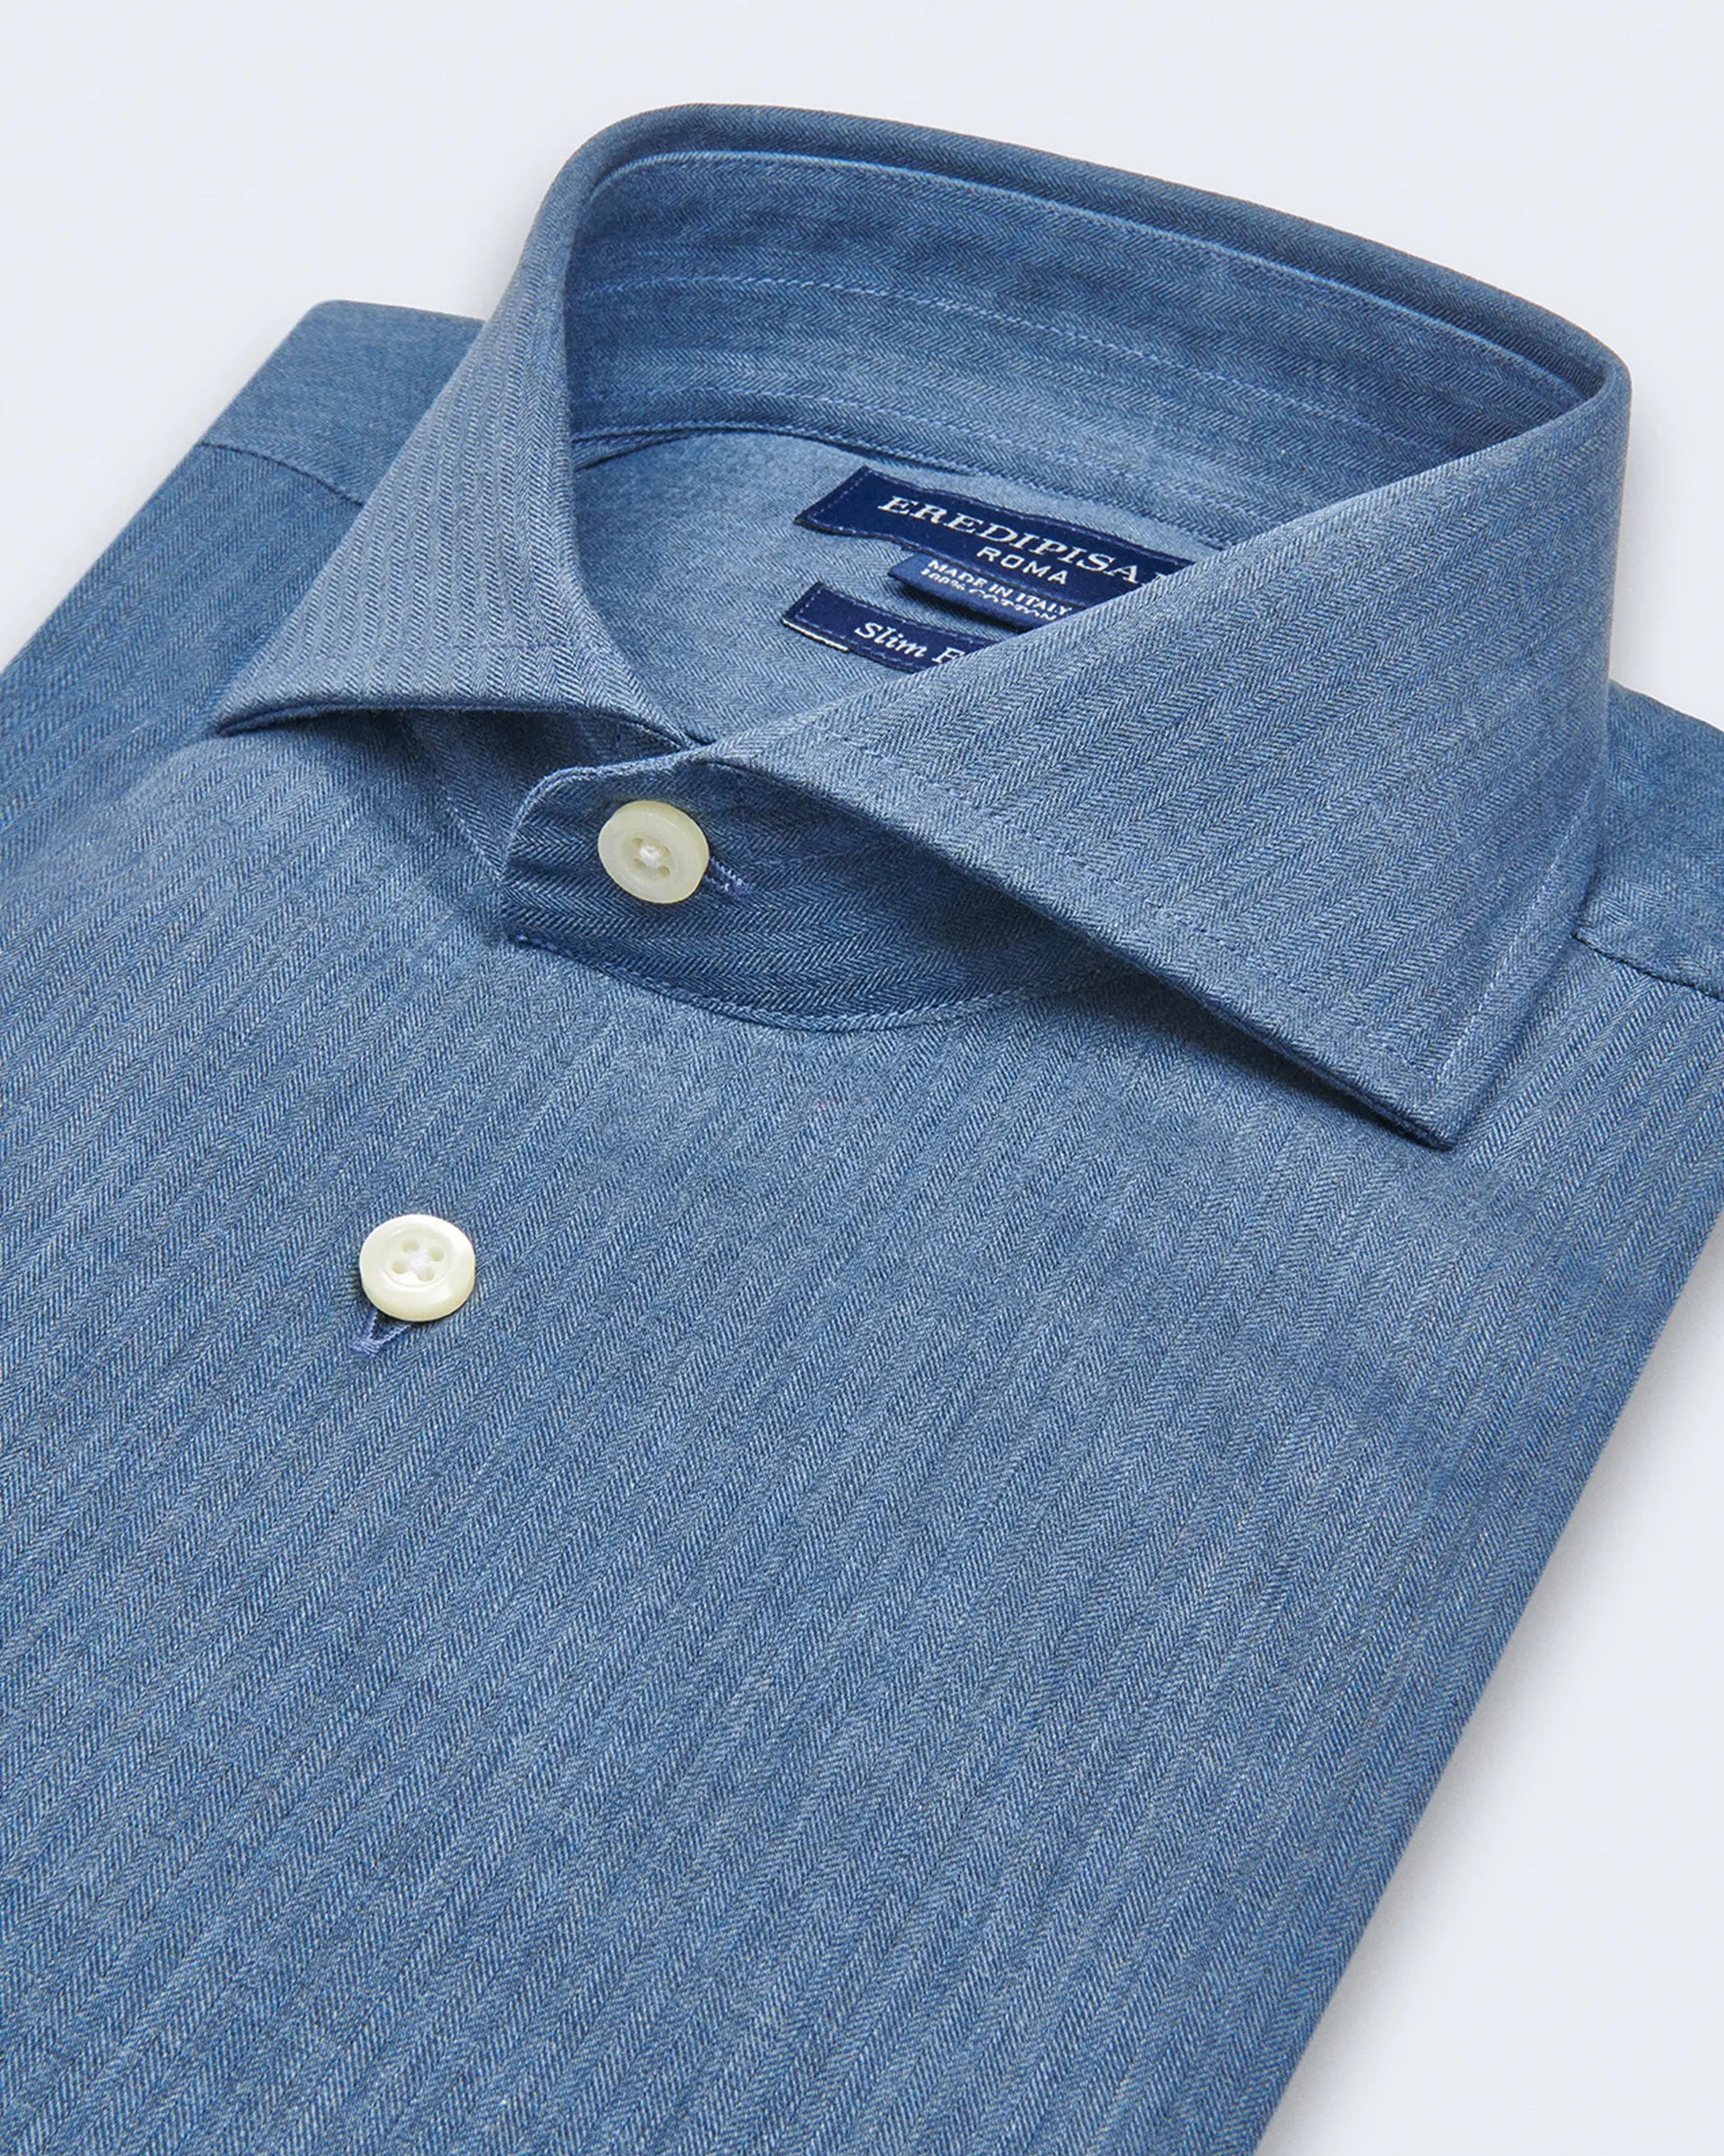 Blue Denim  Slim Fit Shirt with cutaway collar